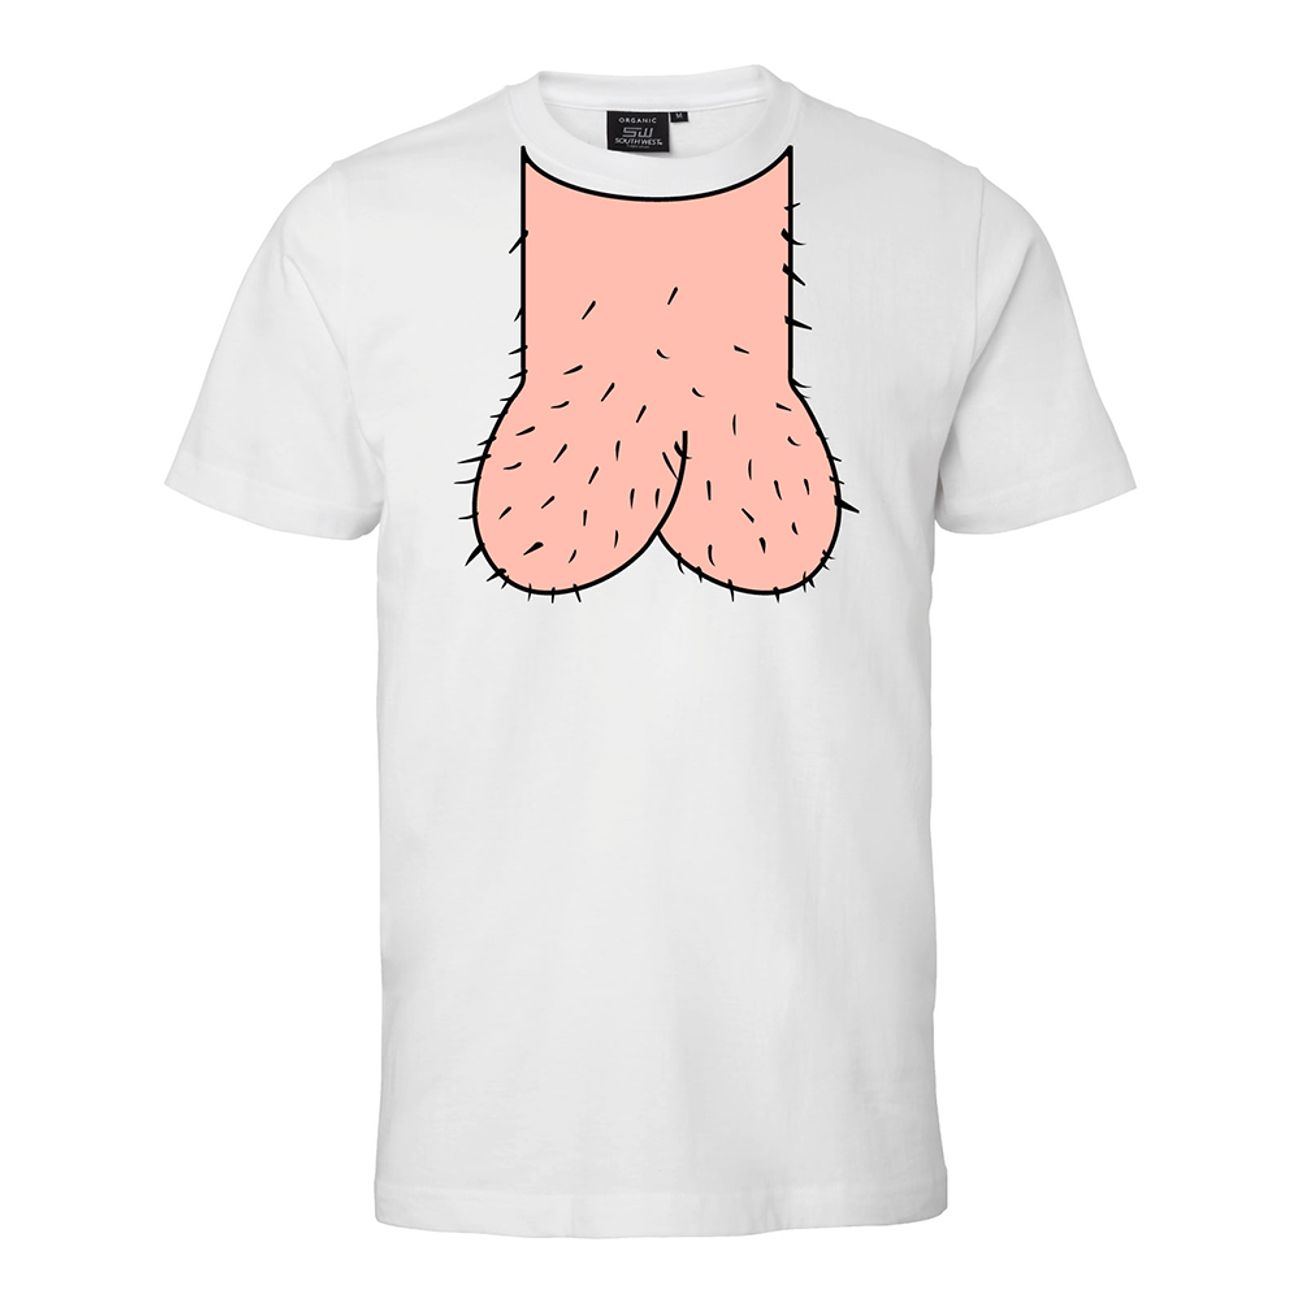 dickhead-t-shirt-68857-2